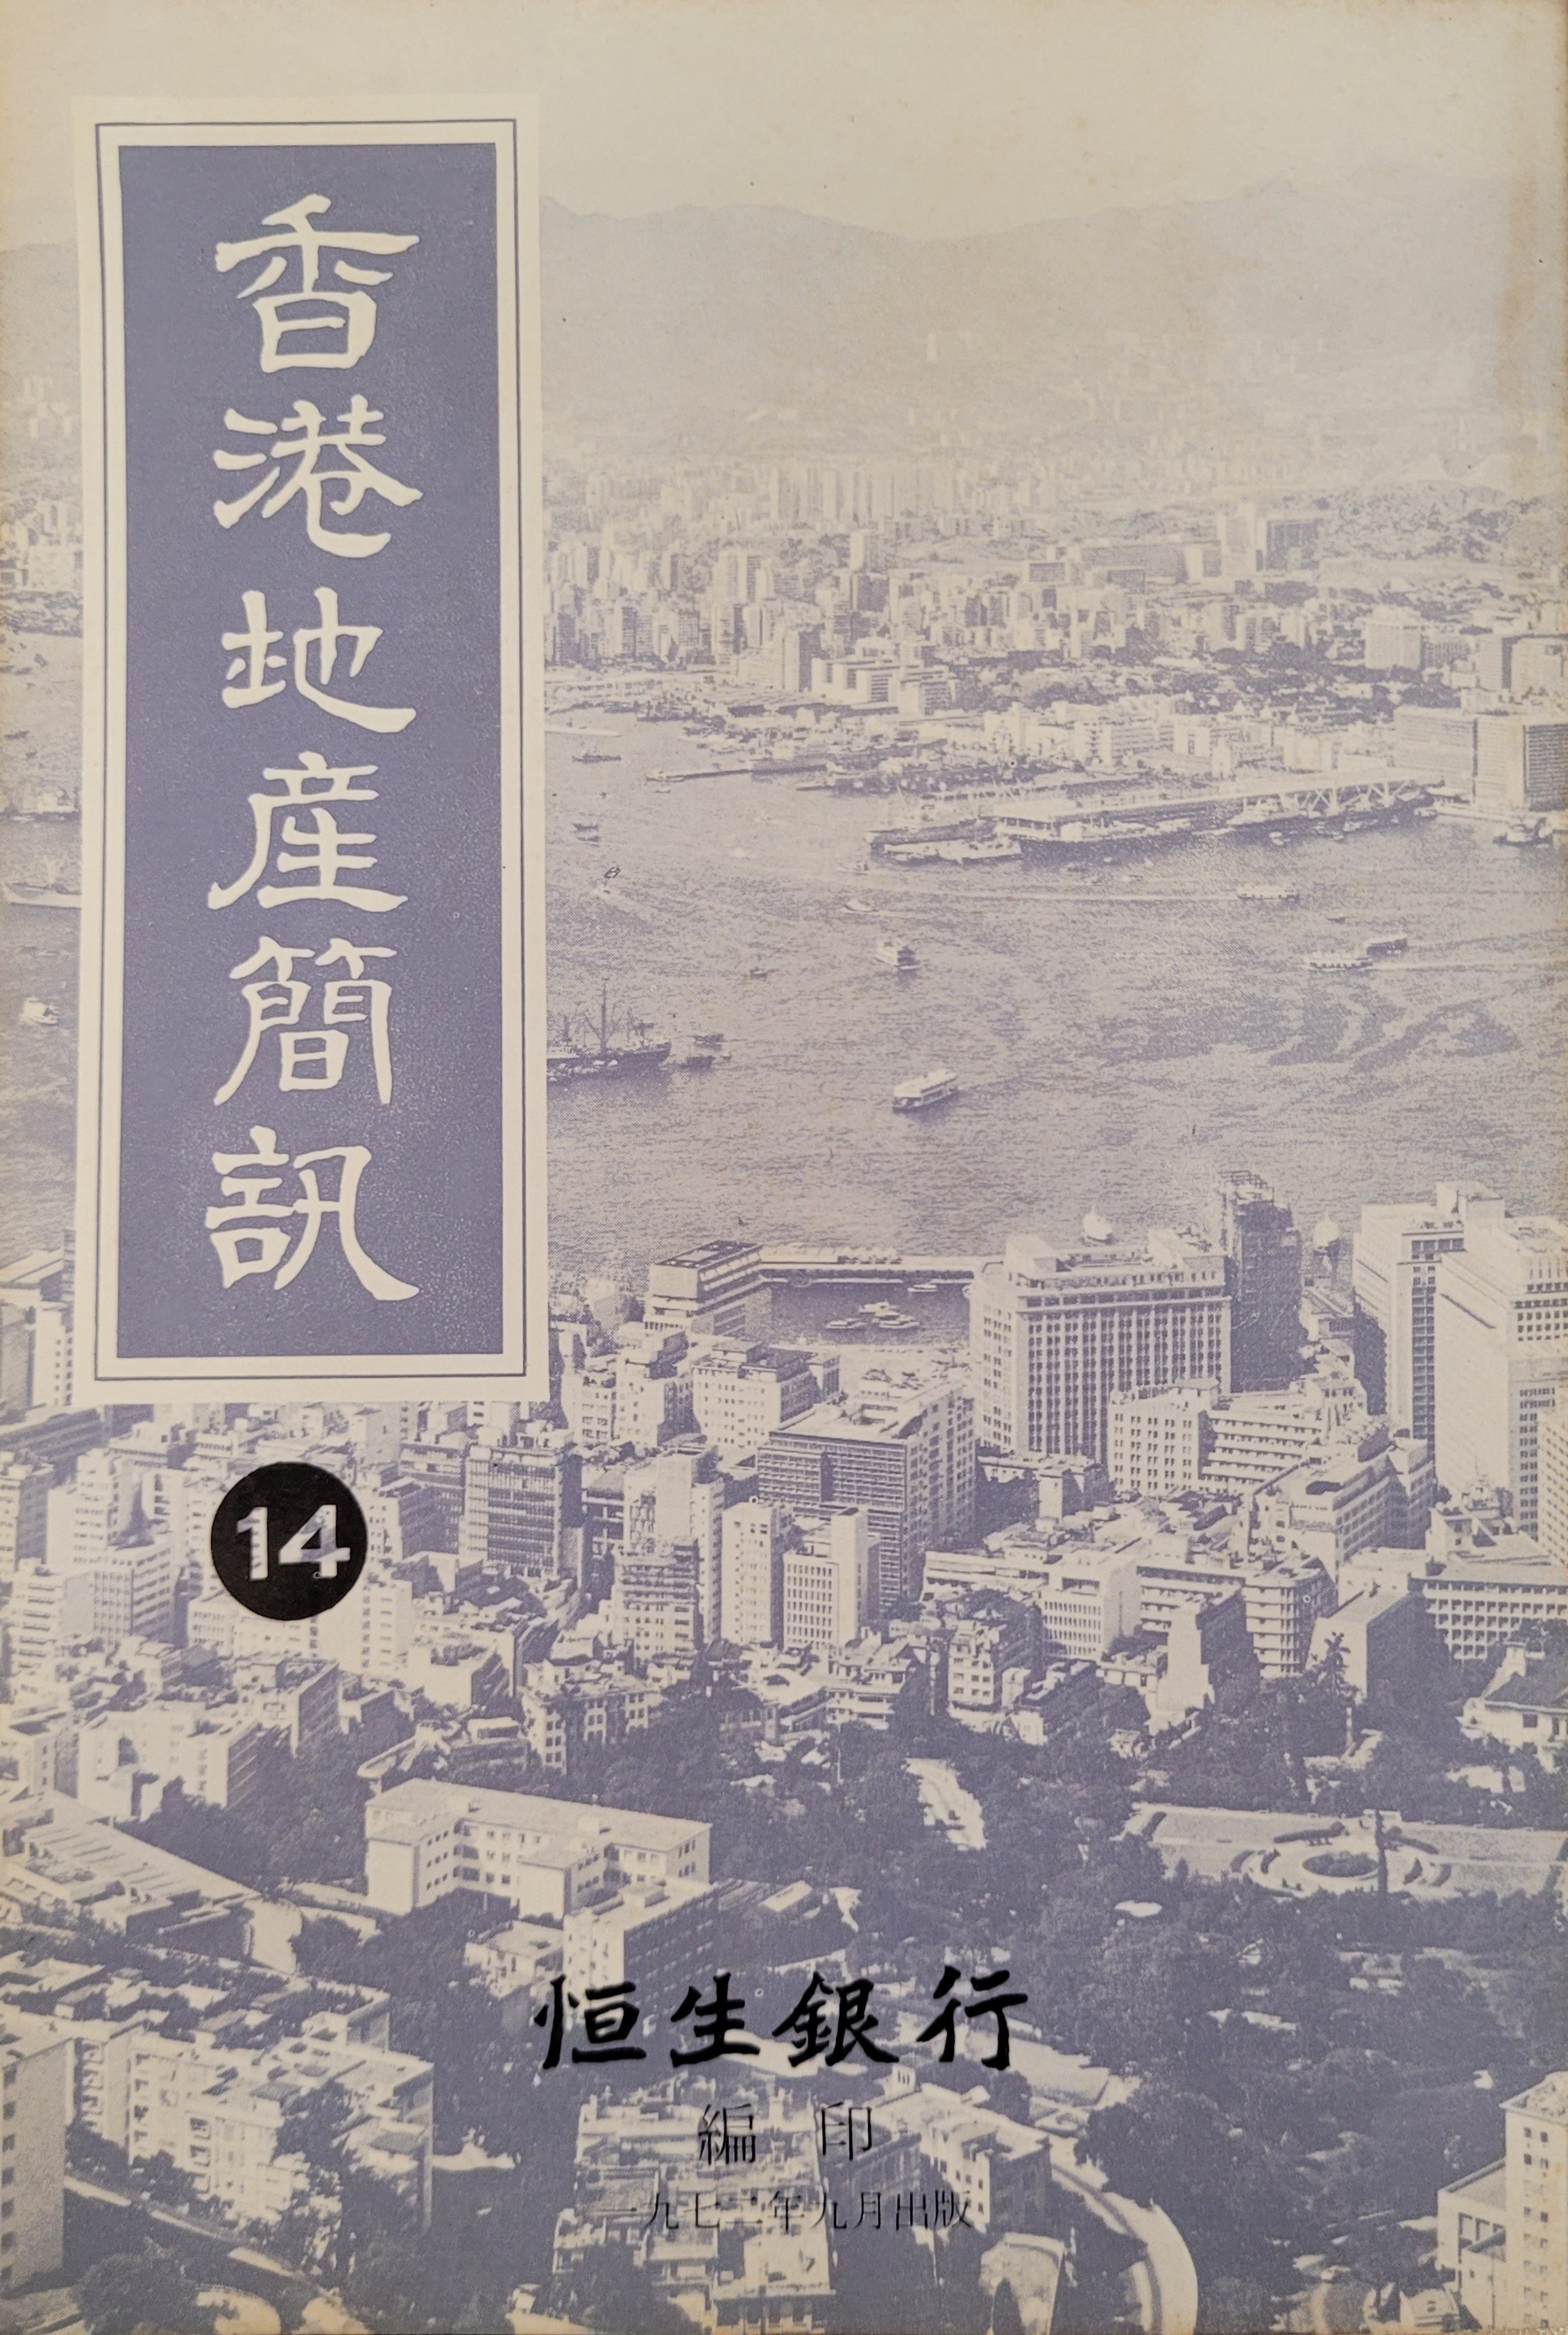 《香港地產簡訊》第14期封面。